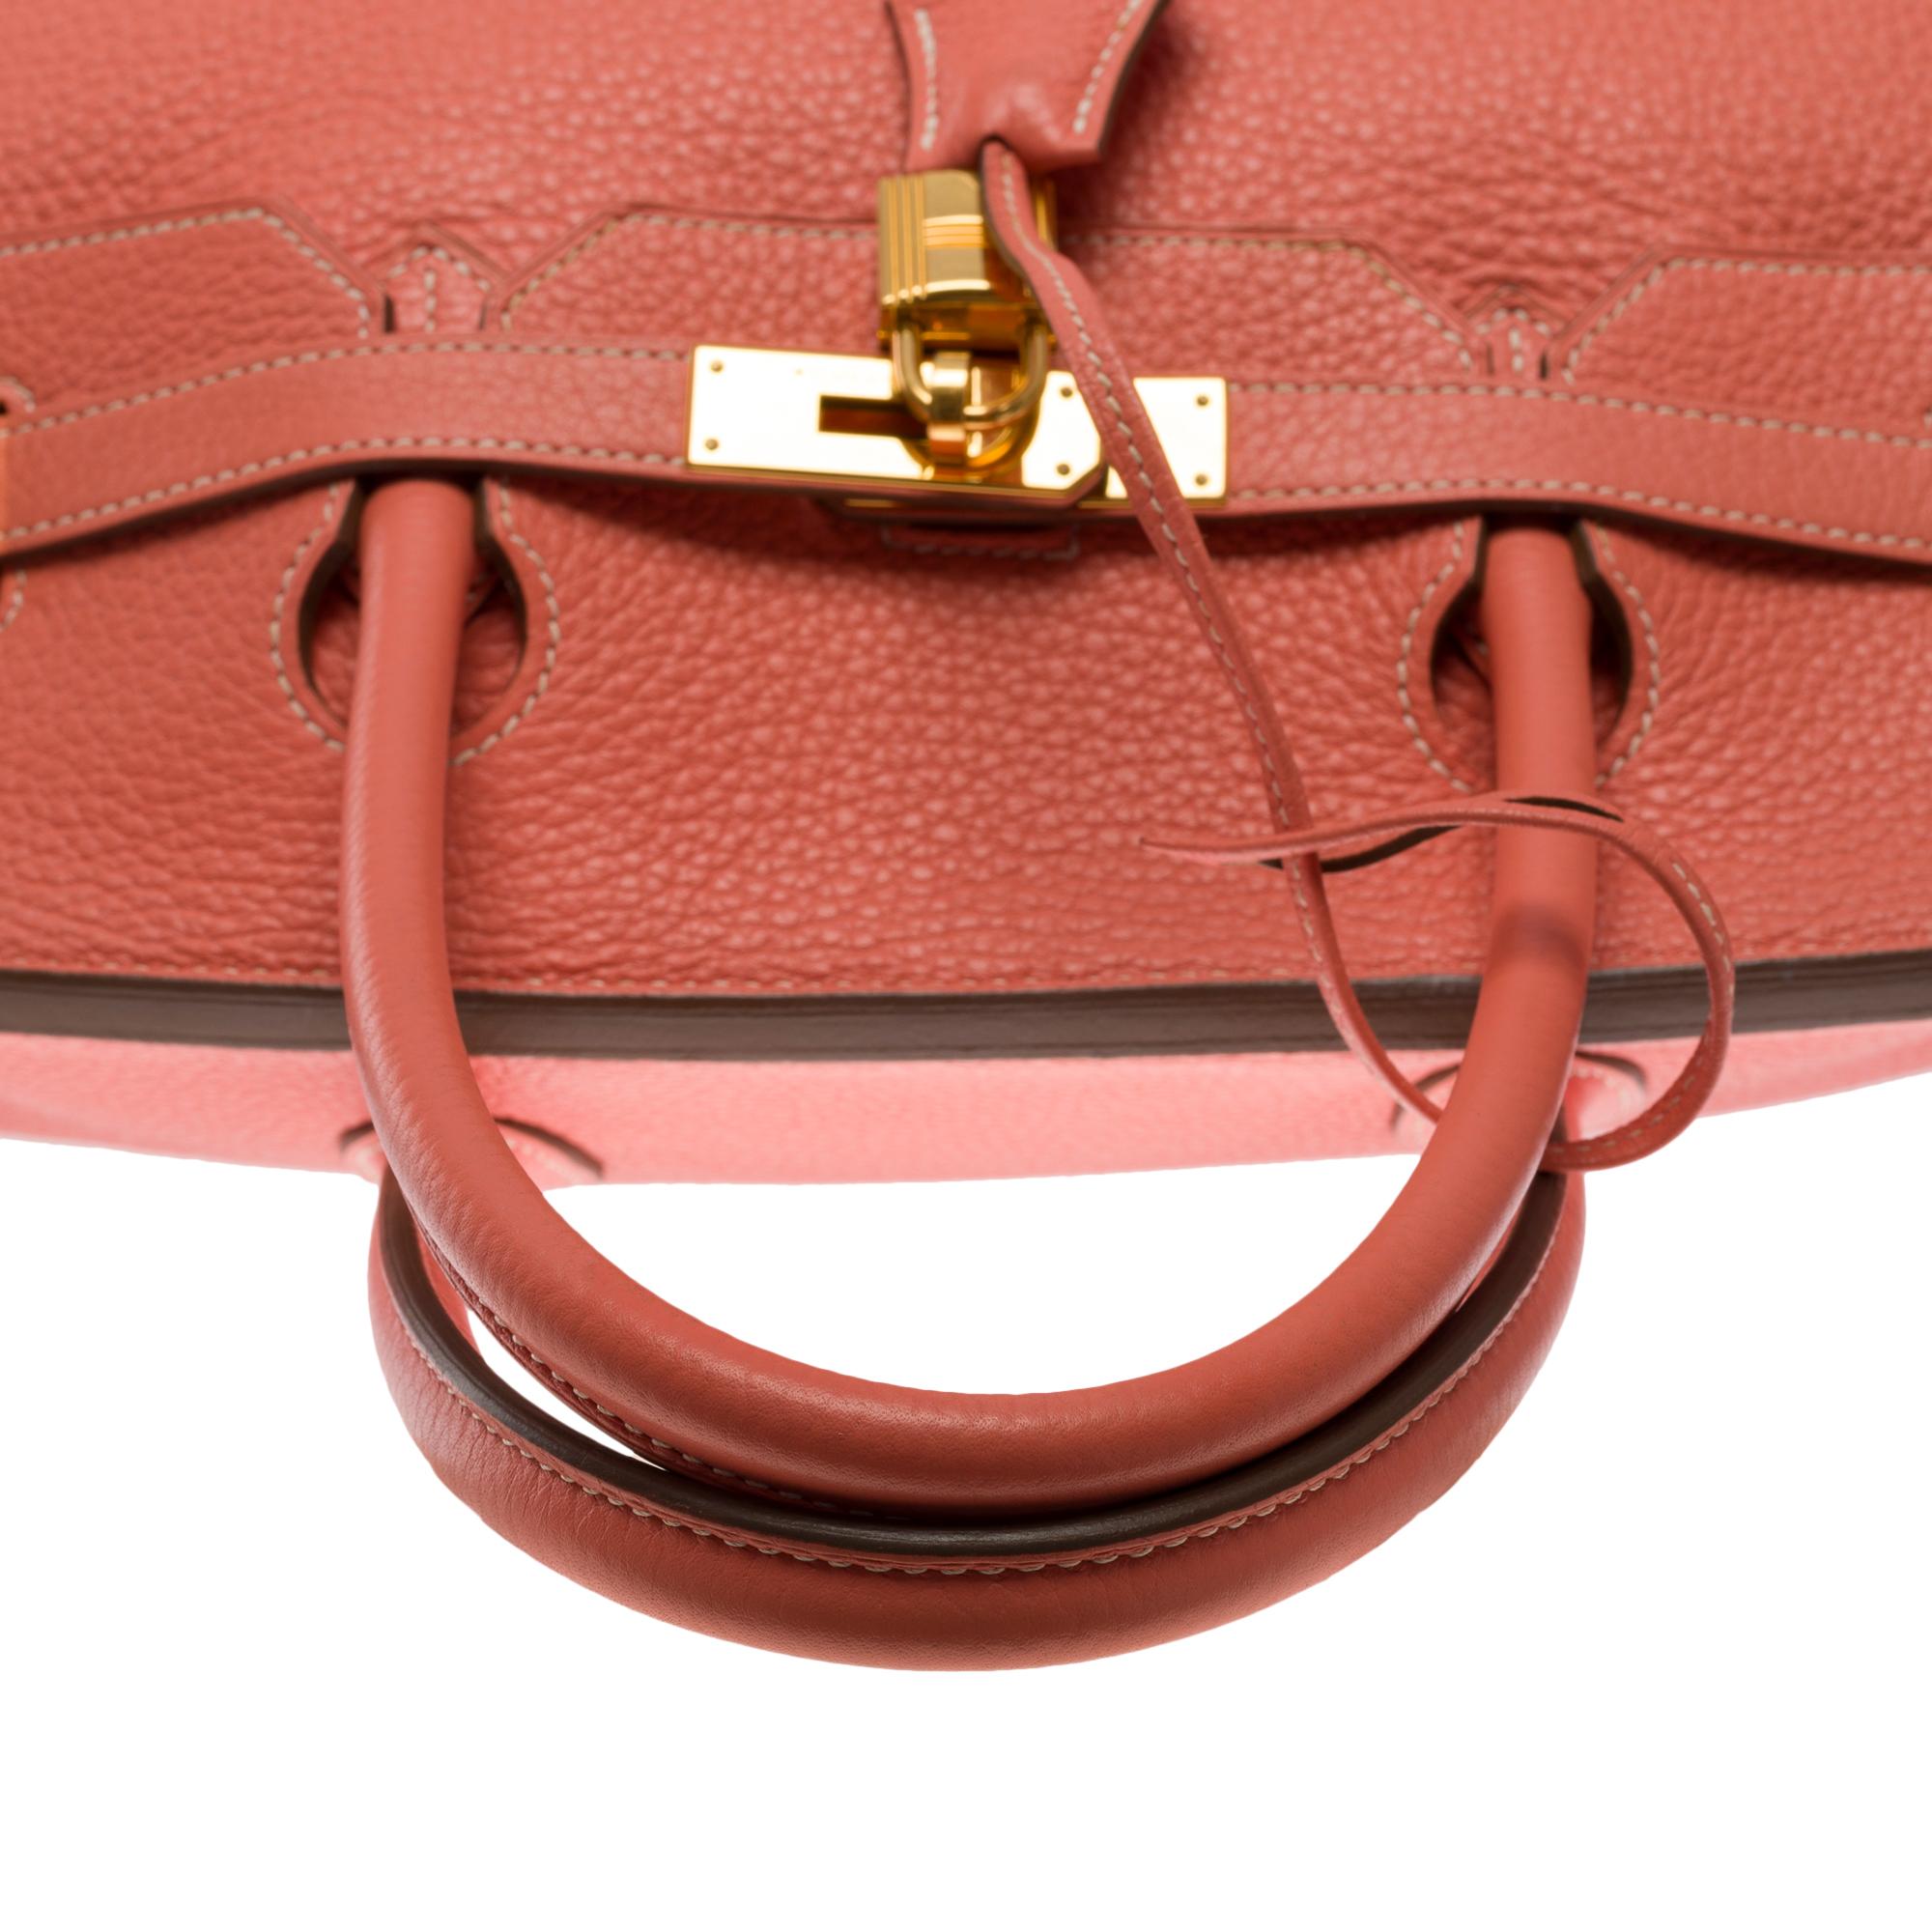 Stunning Hermes Birkin 40cm handbag in Rose Tea Togo leather, GHW For Sale 3